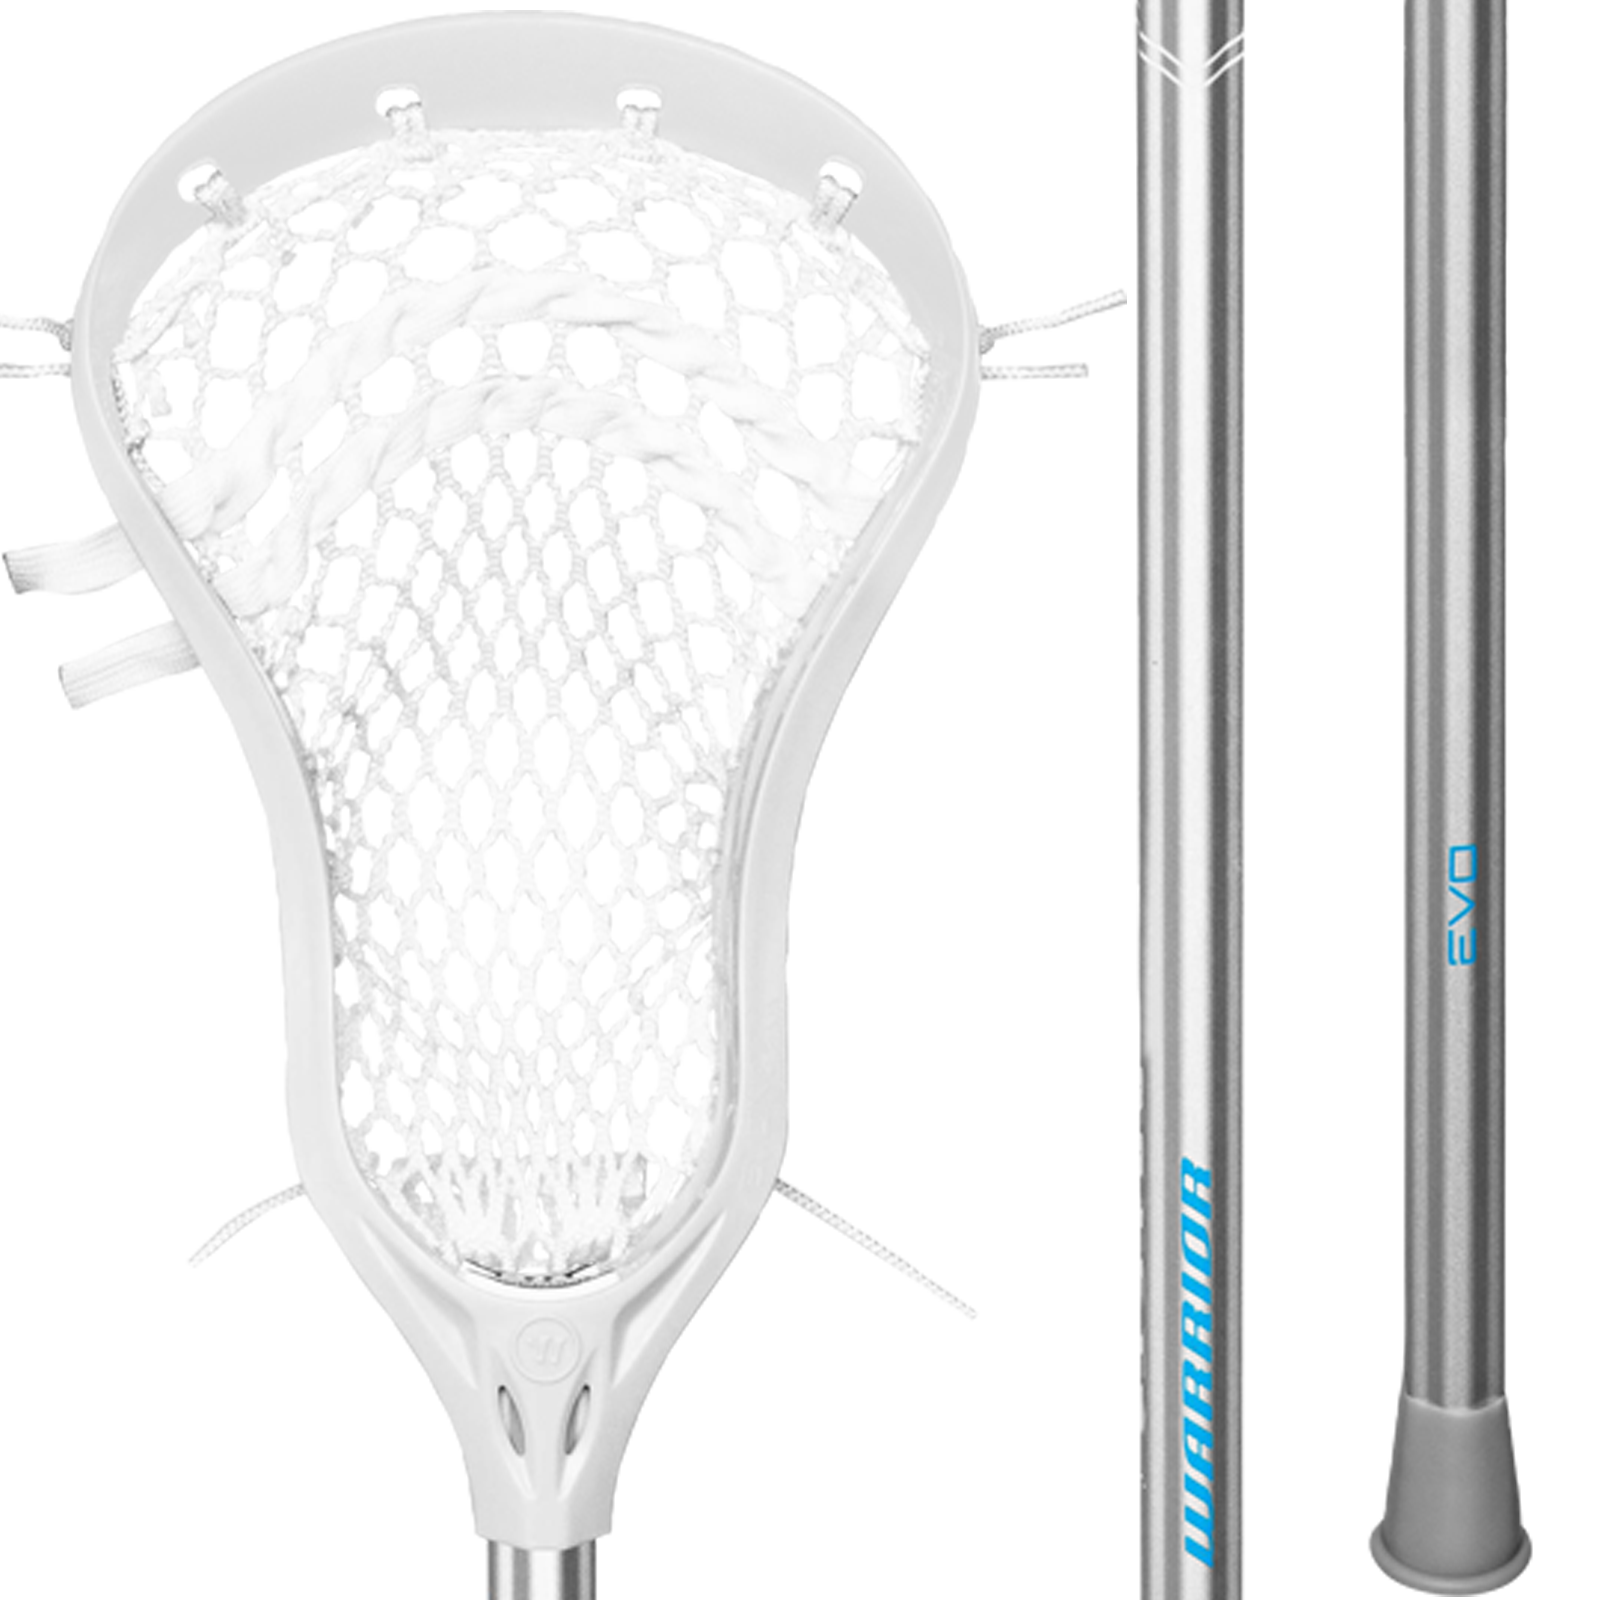 Warrior EVO Attack Lacrosse Complete Stick